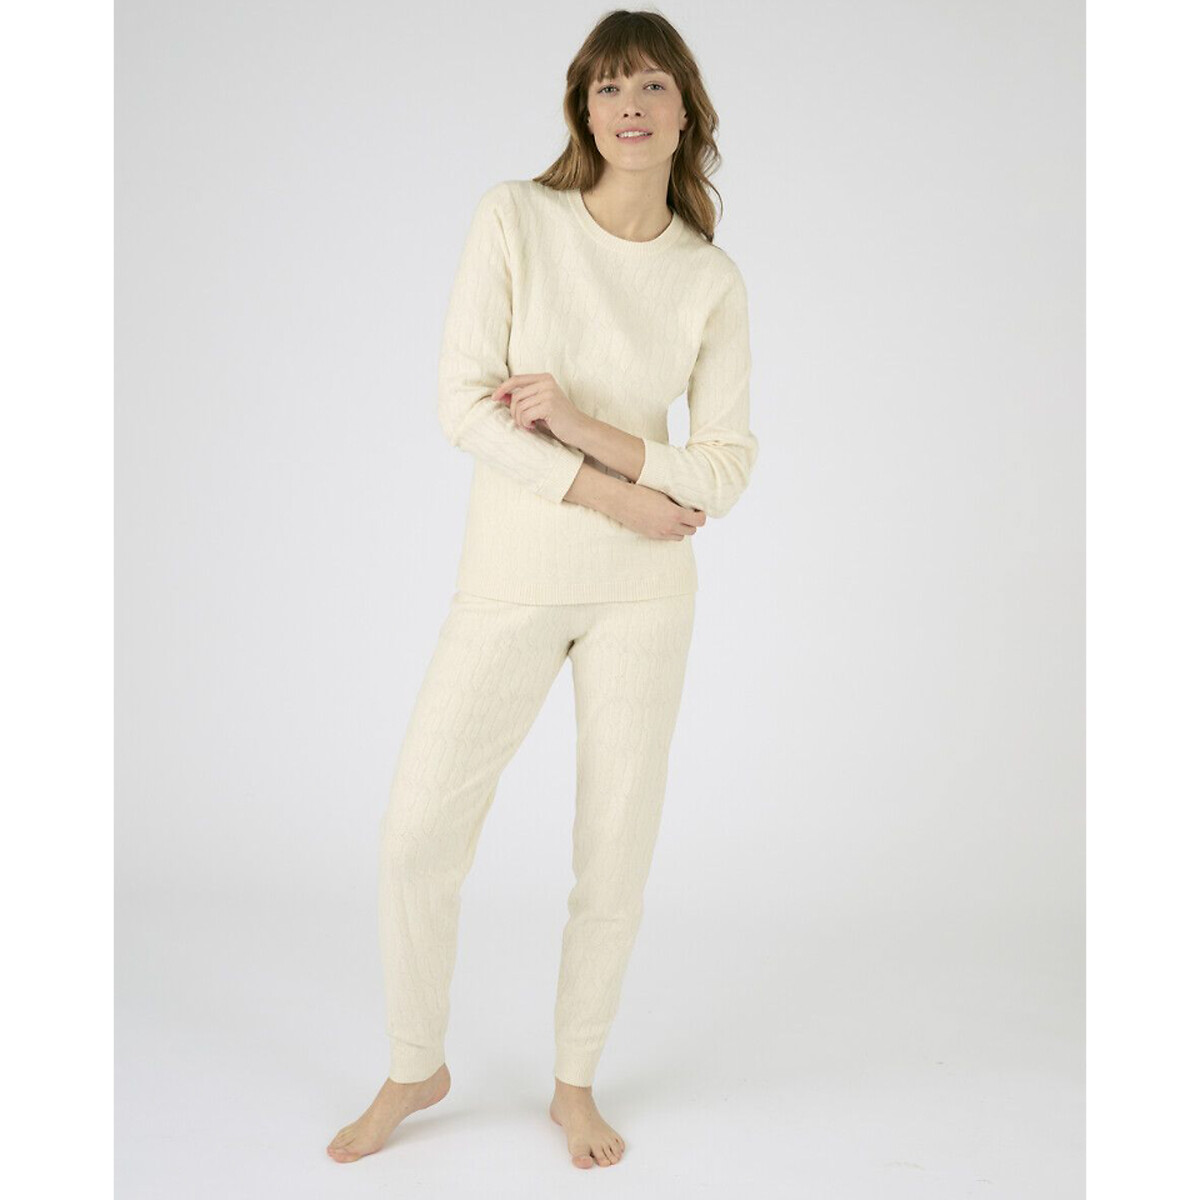 Комплект пижамный домашний La Redoute XXL белый комплект пижамный из термолактила la redoute xs синий